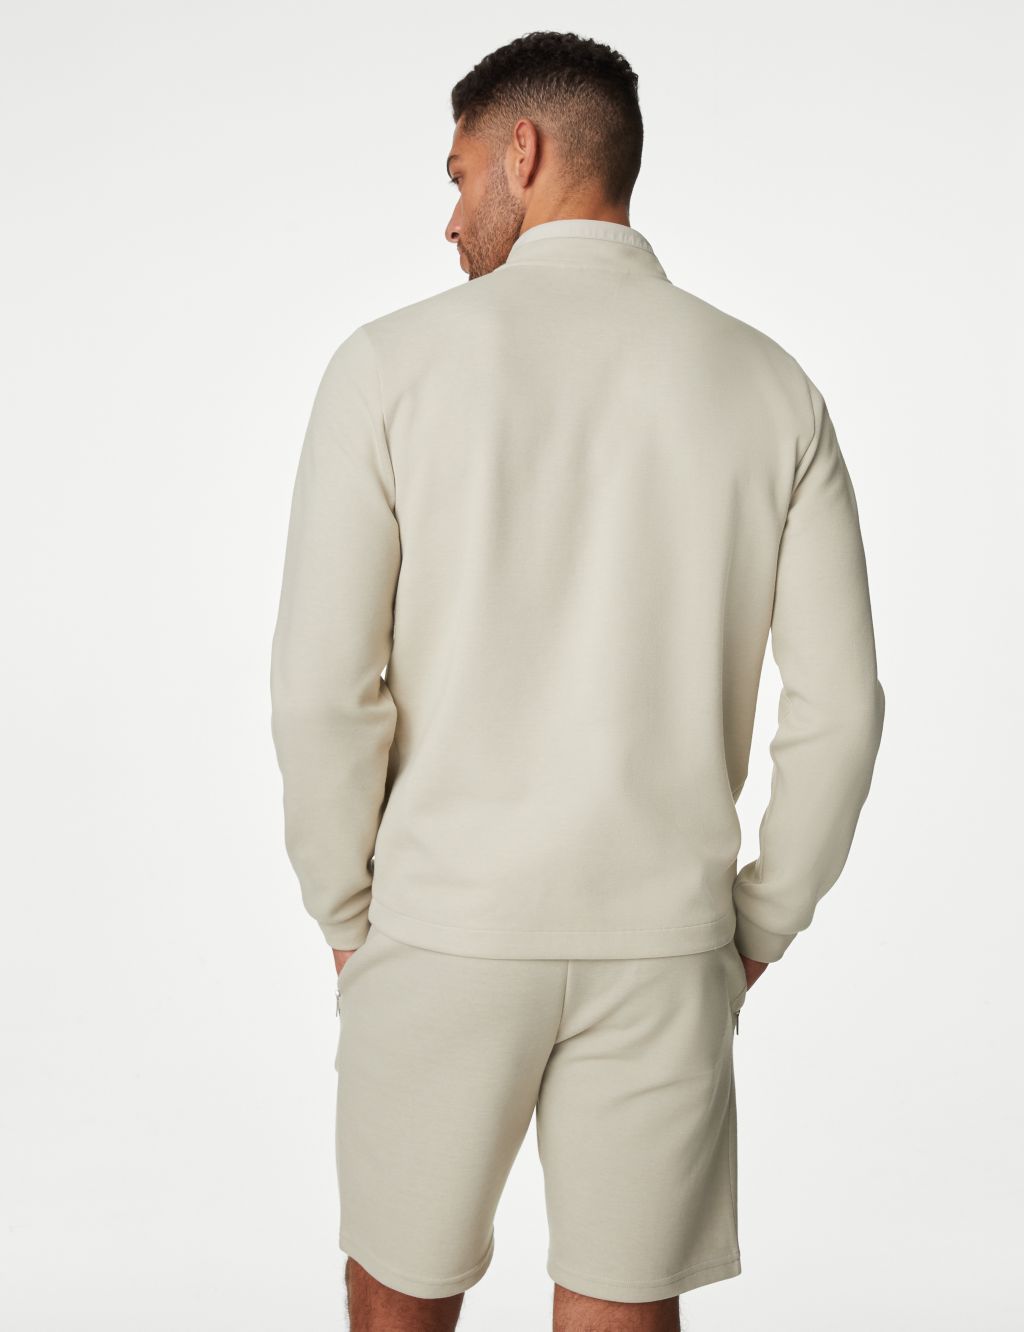 Cotton Blend Half Zip Sweatshirt image 5